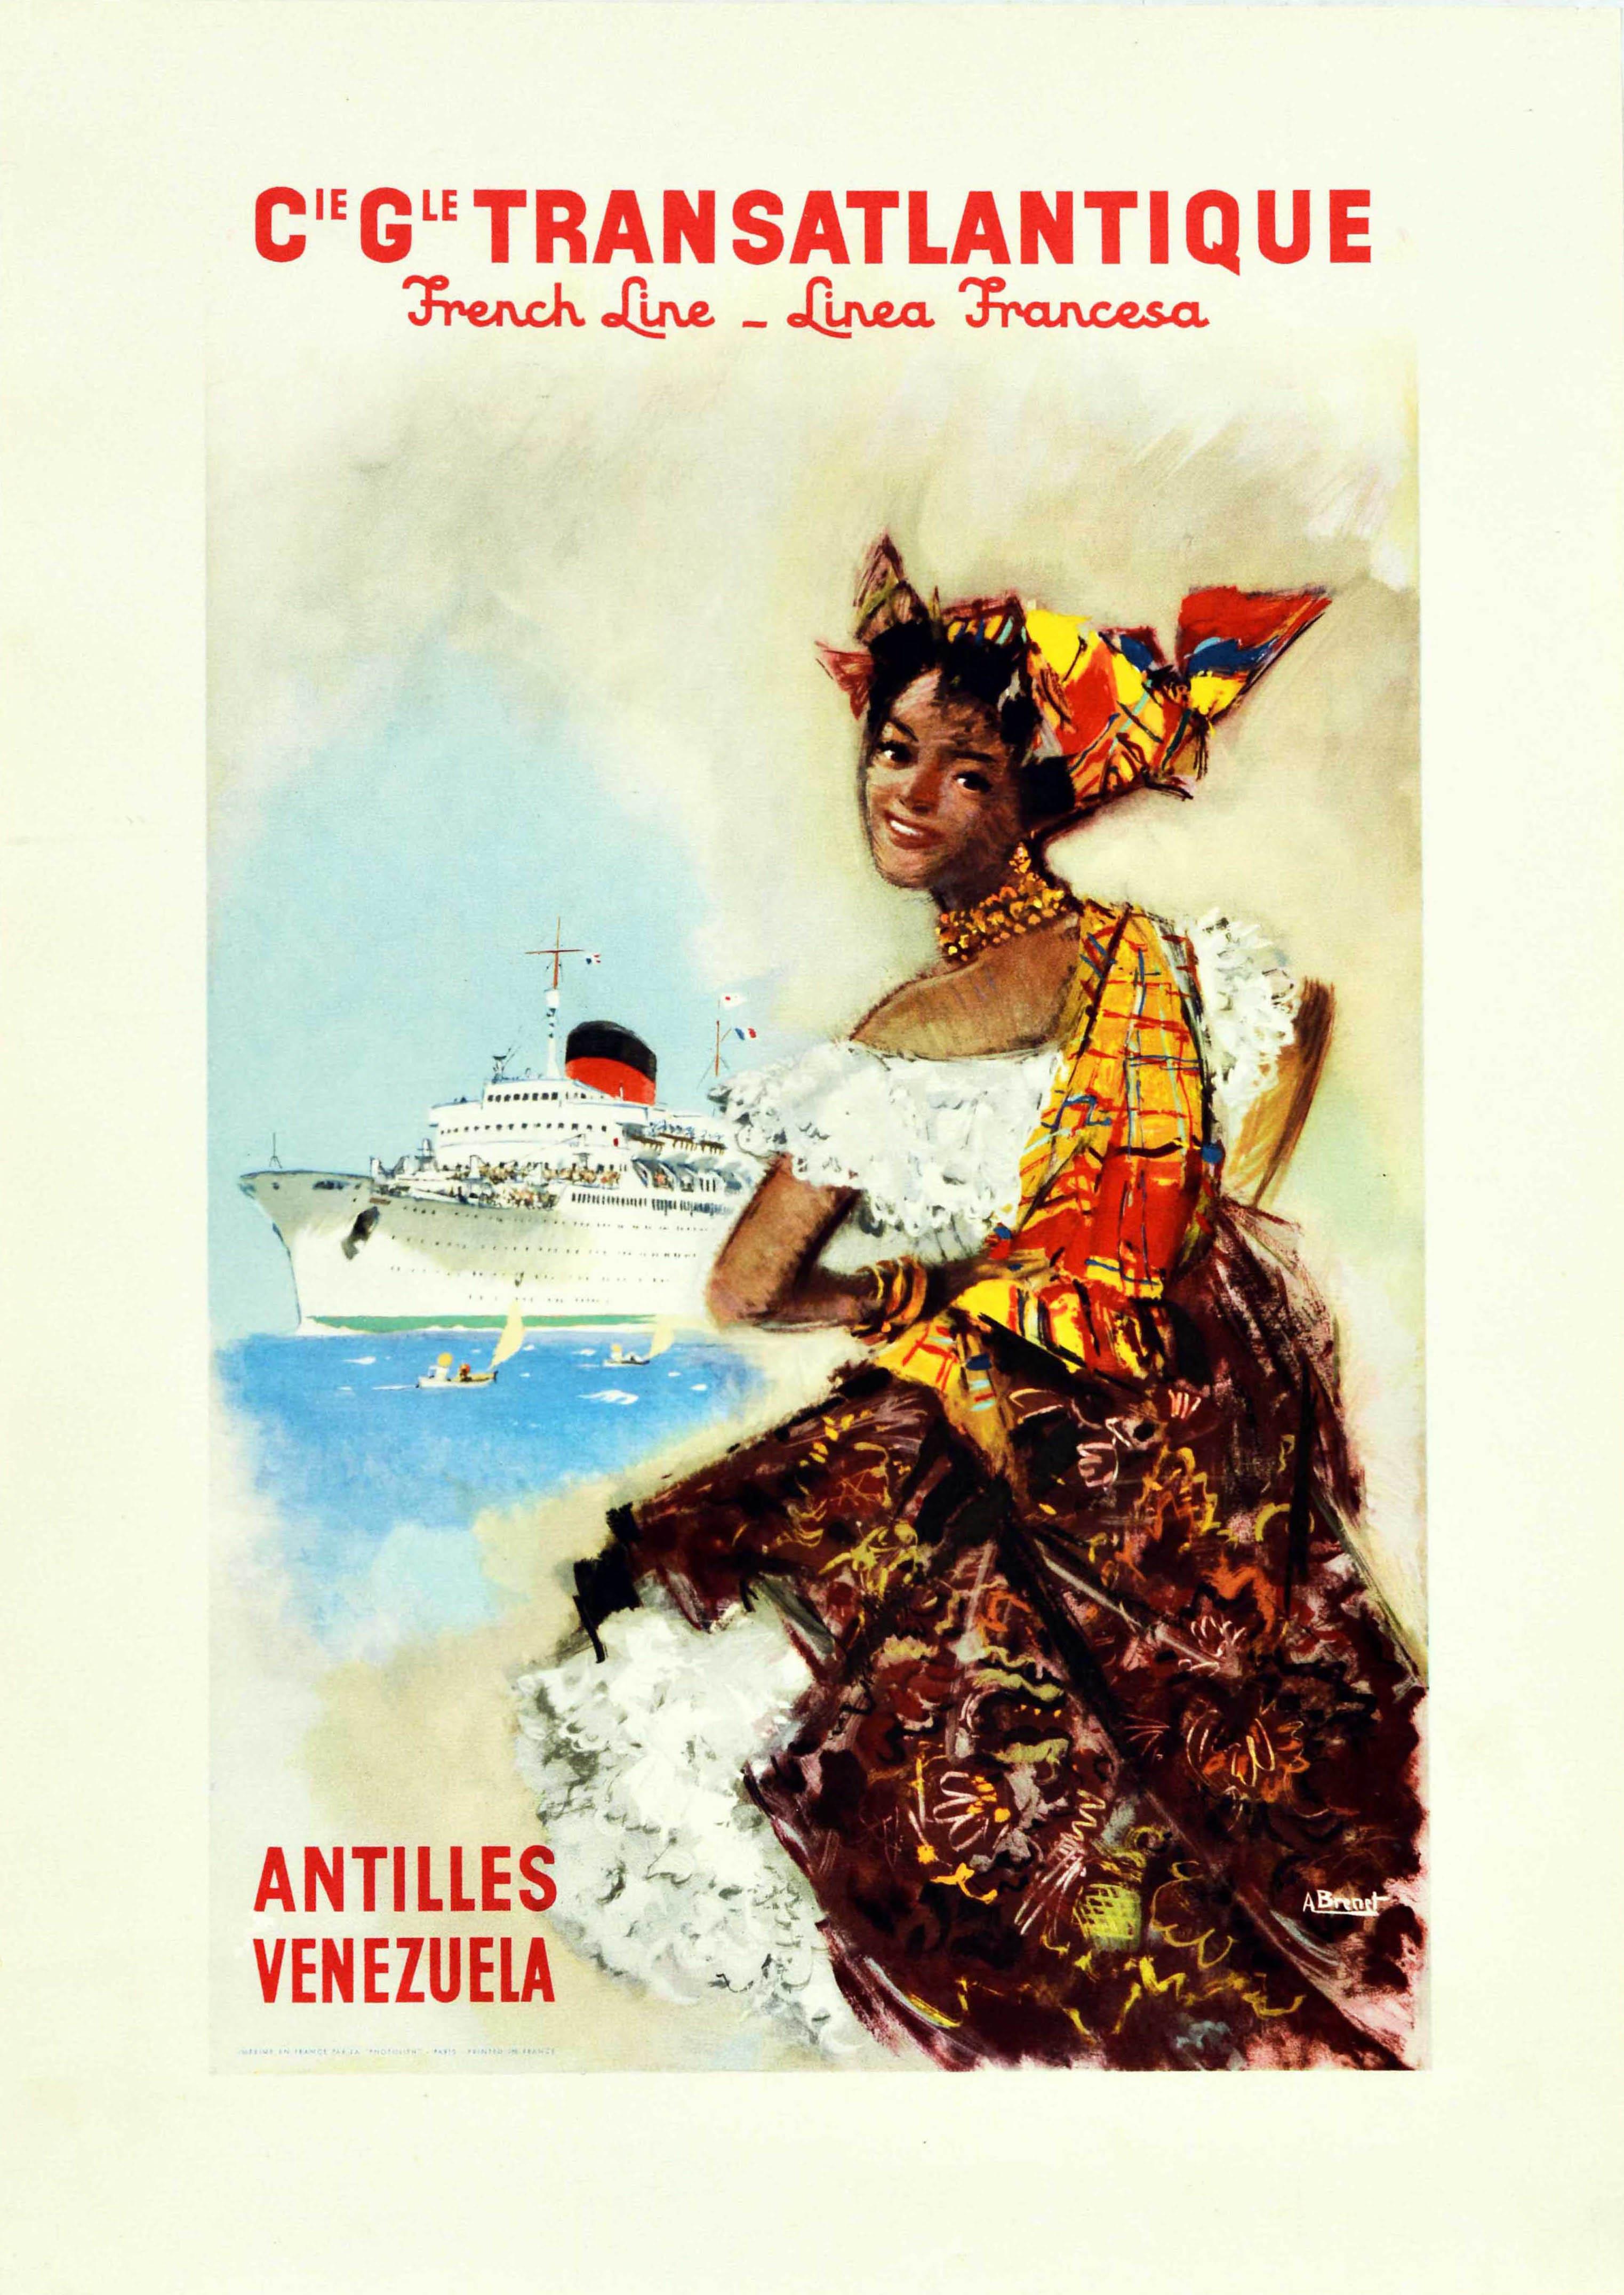 Albert Brenet Print - Original Vintage Cruise Travel Poster Antilles Venezuela French Line Brenet Art